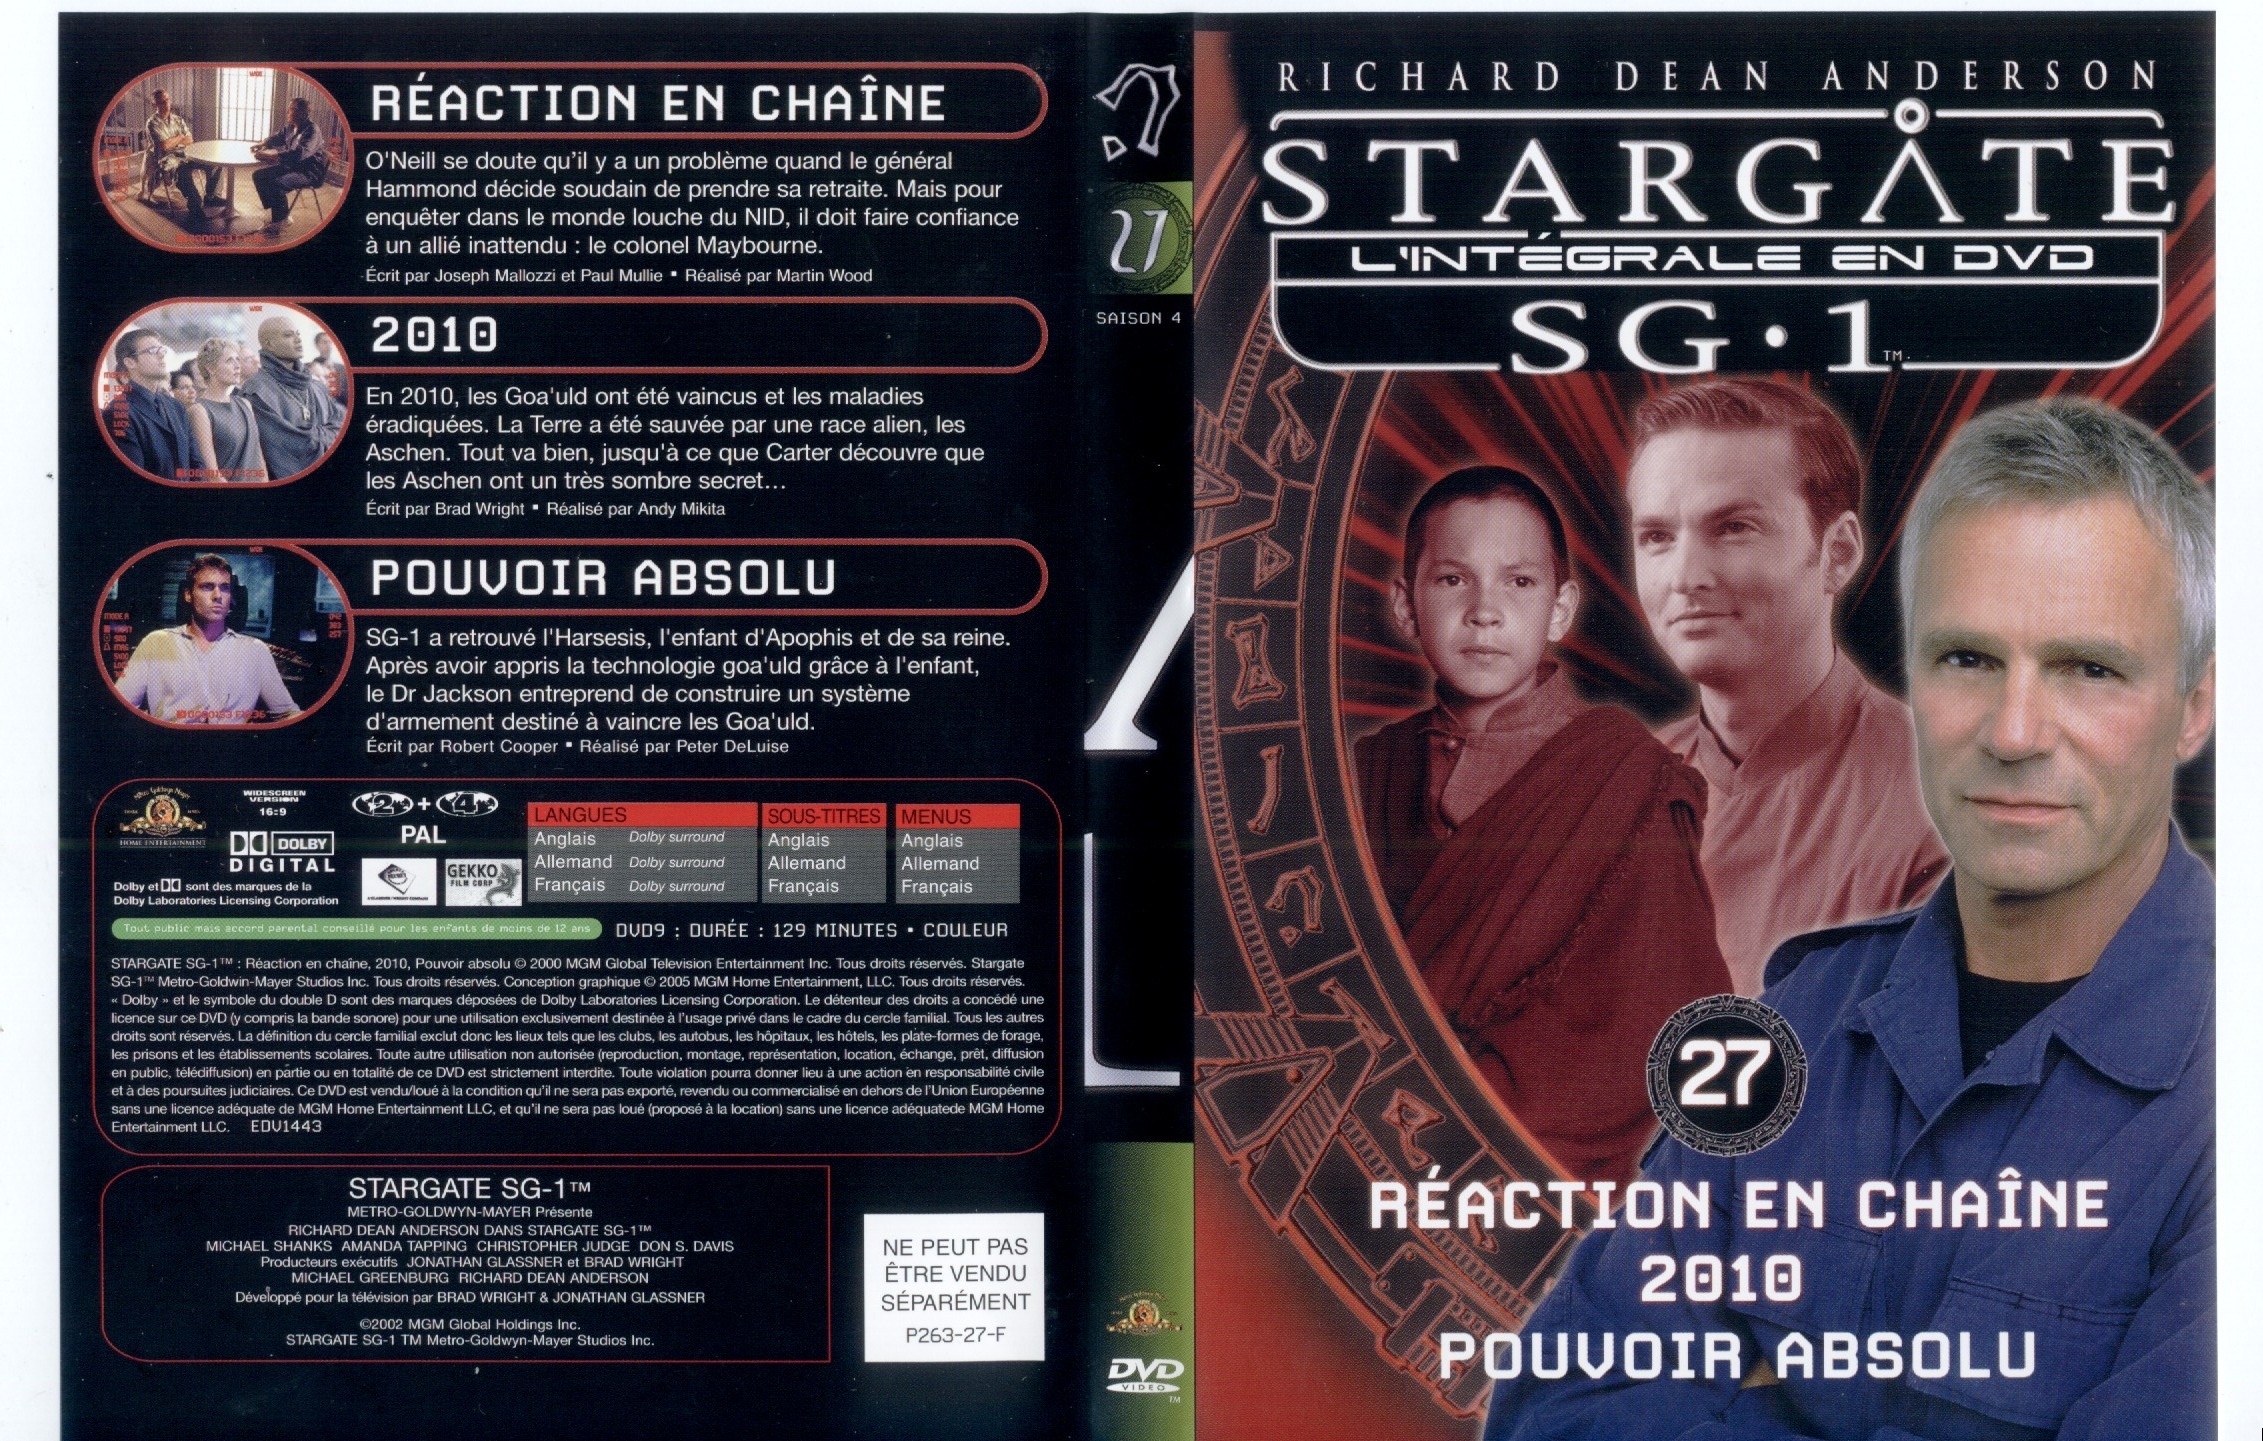 Jaquette DVD Stargate saison 4 vol 27